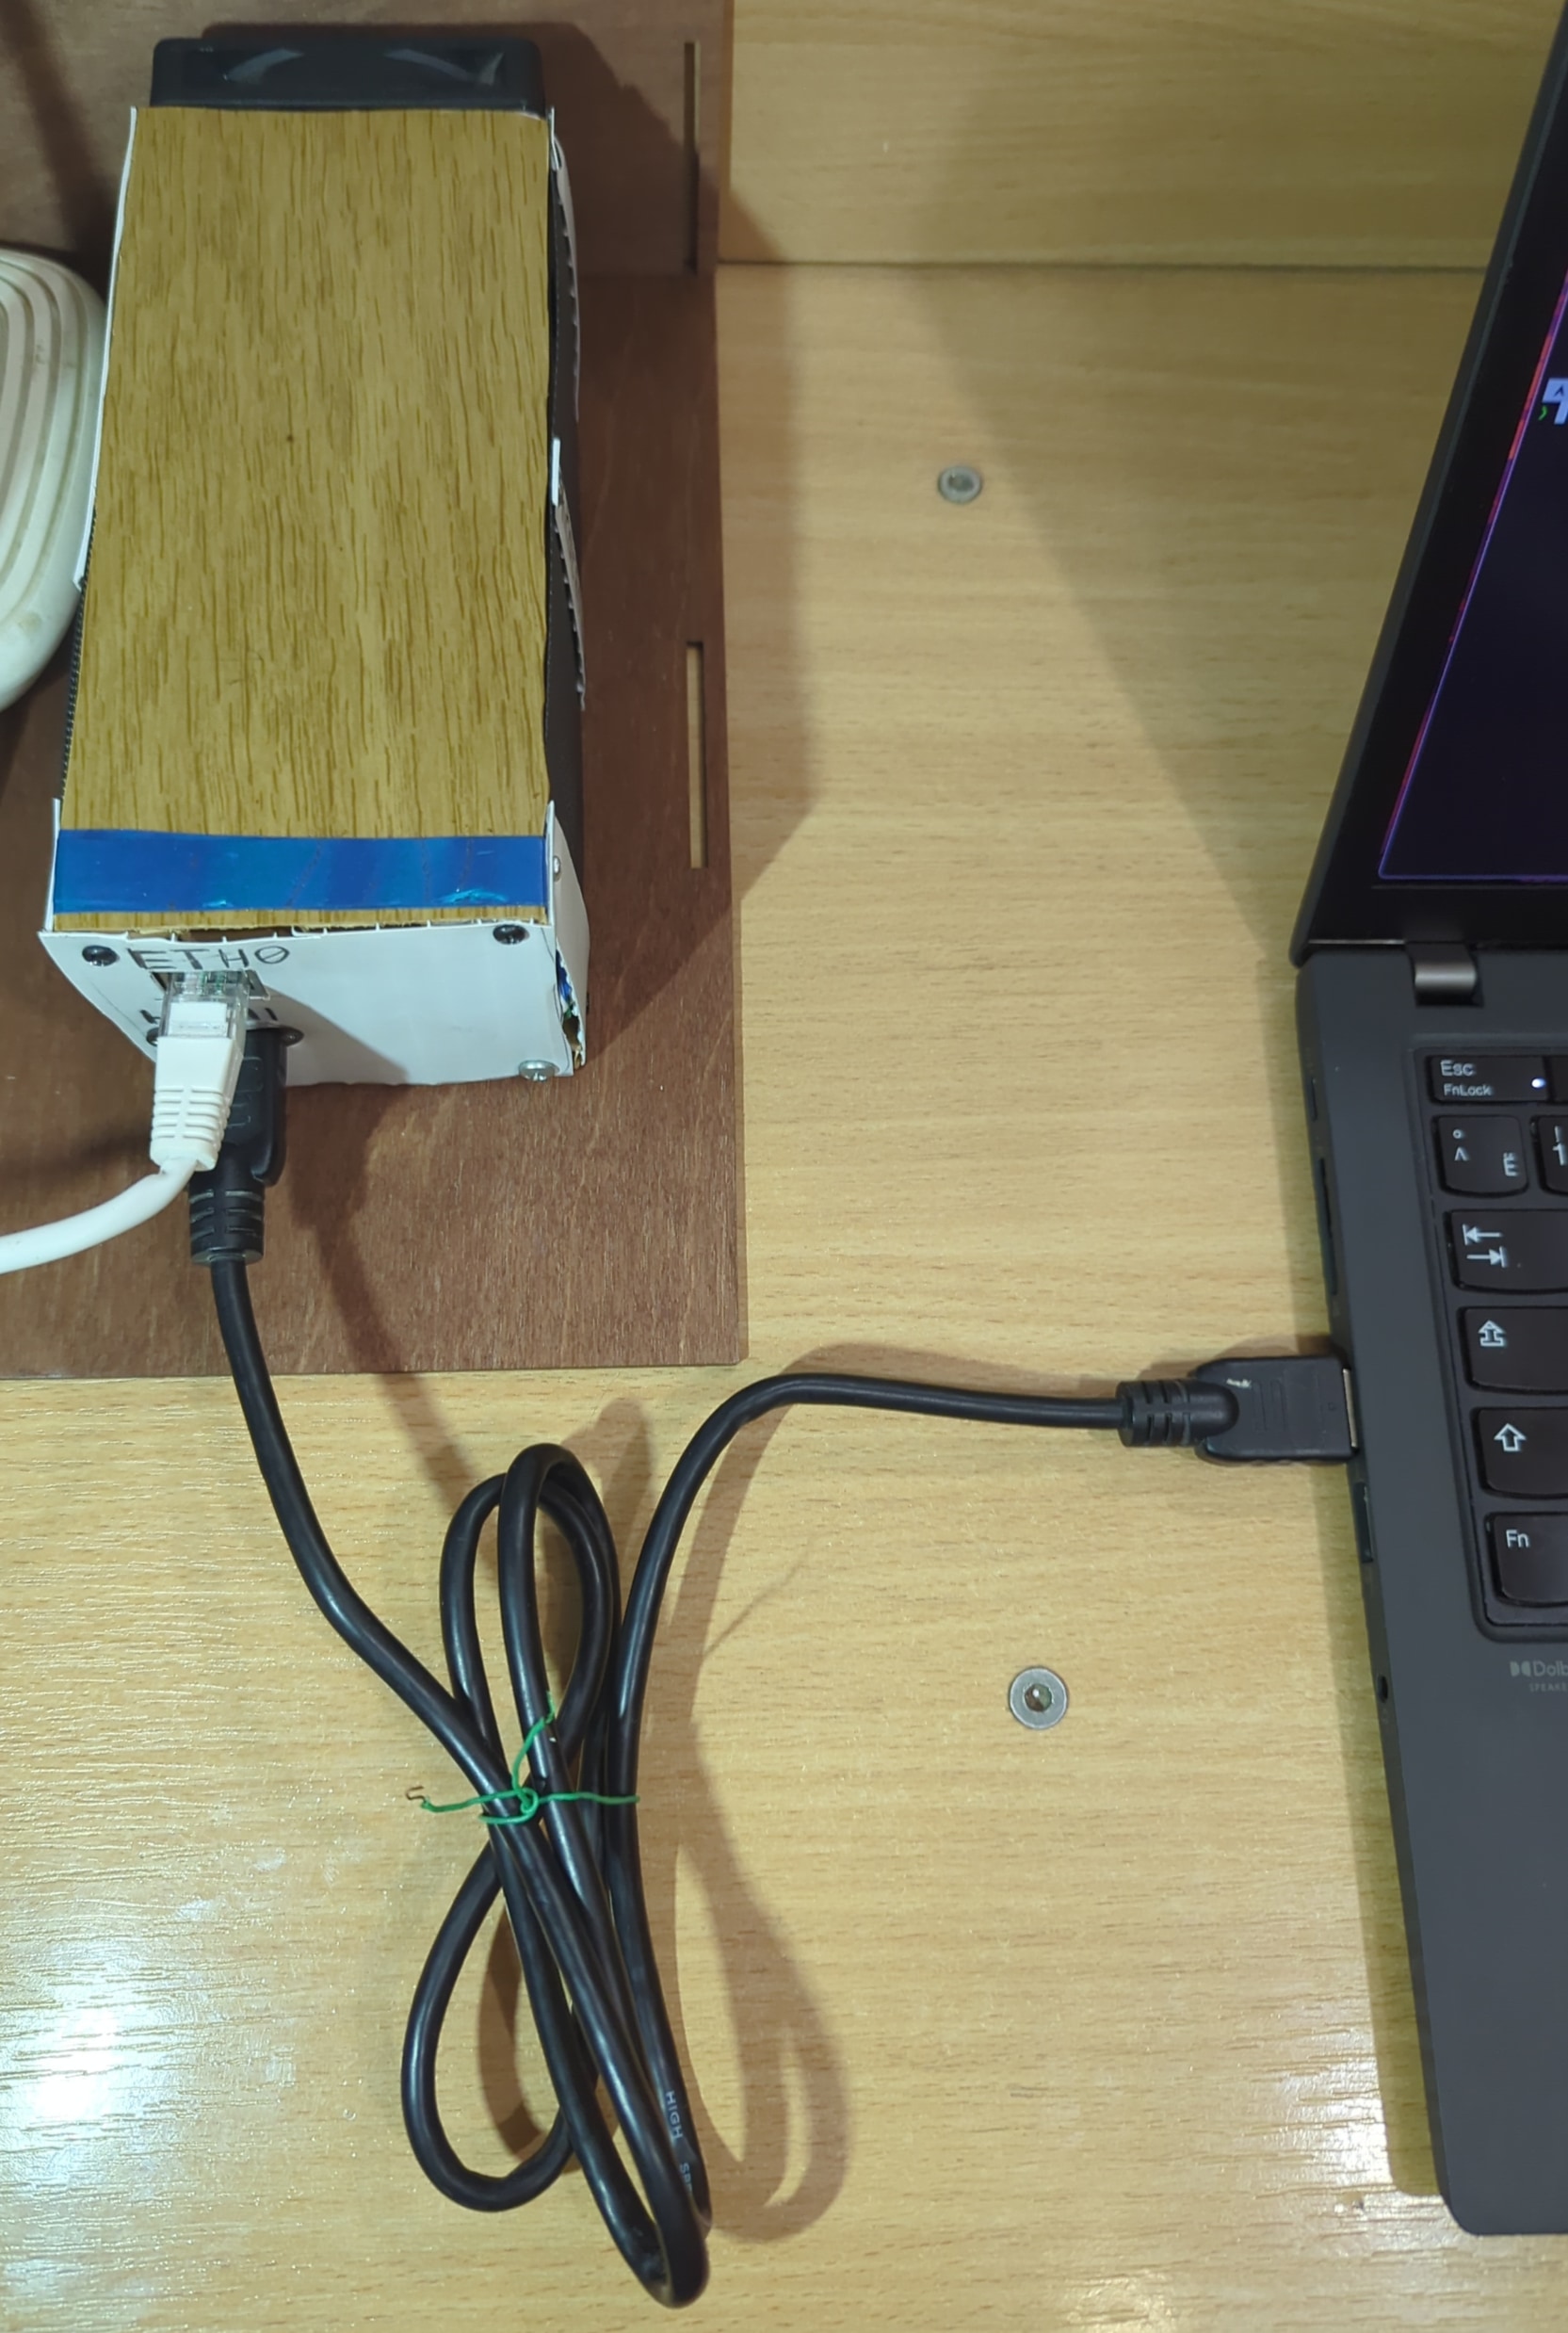 HDMI з’єданння між PiKVM ноутбуком.